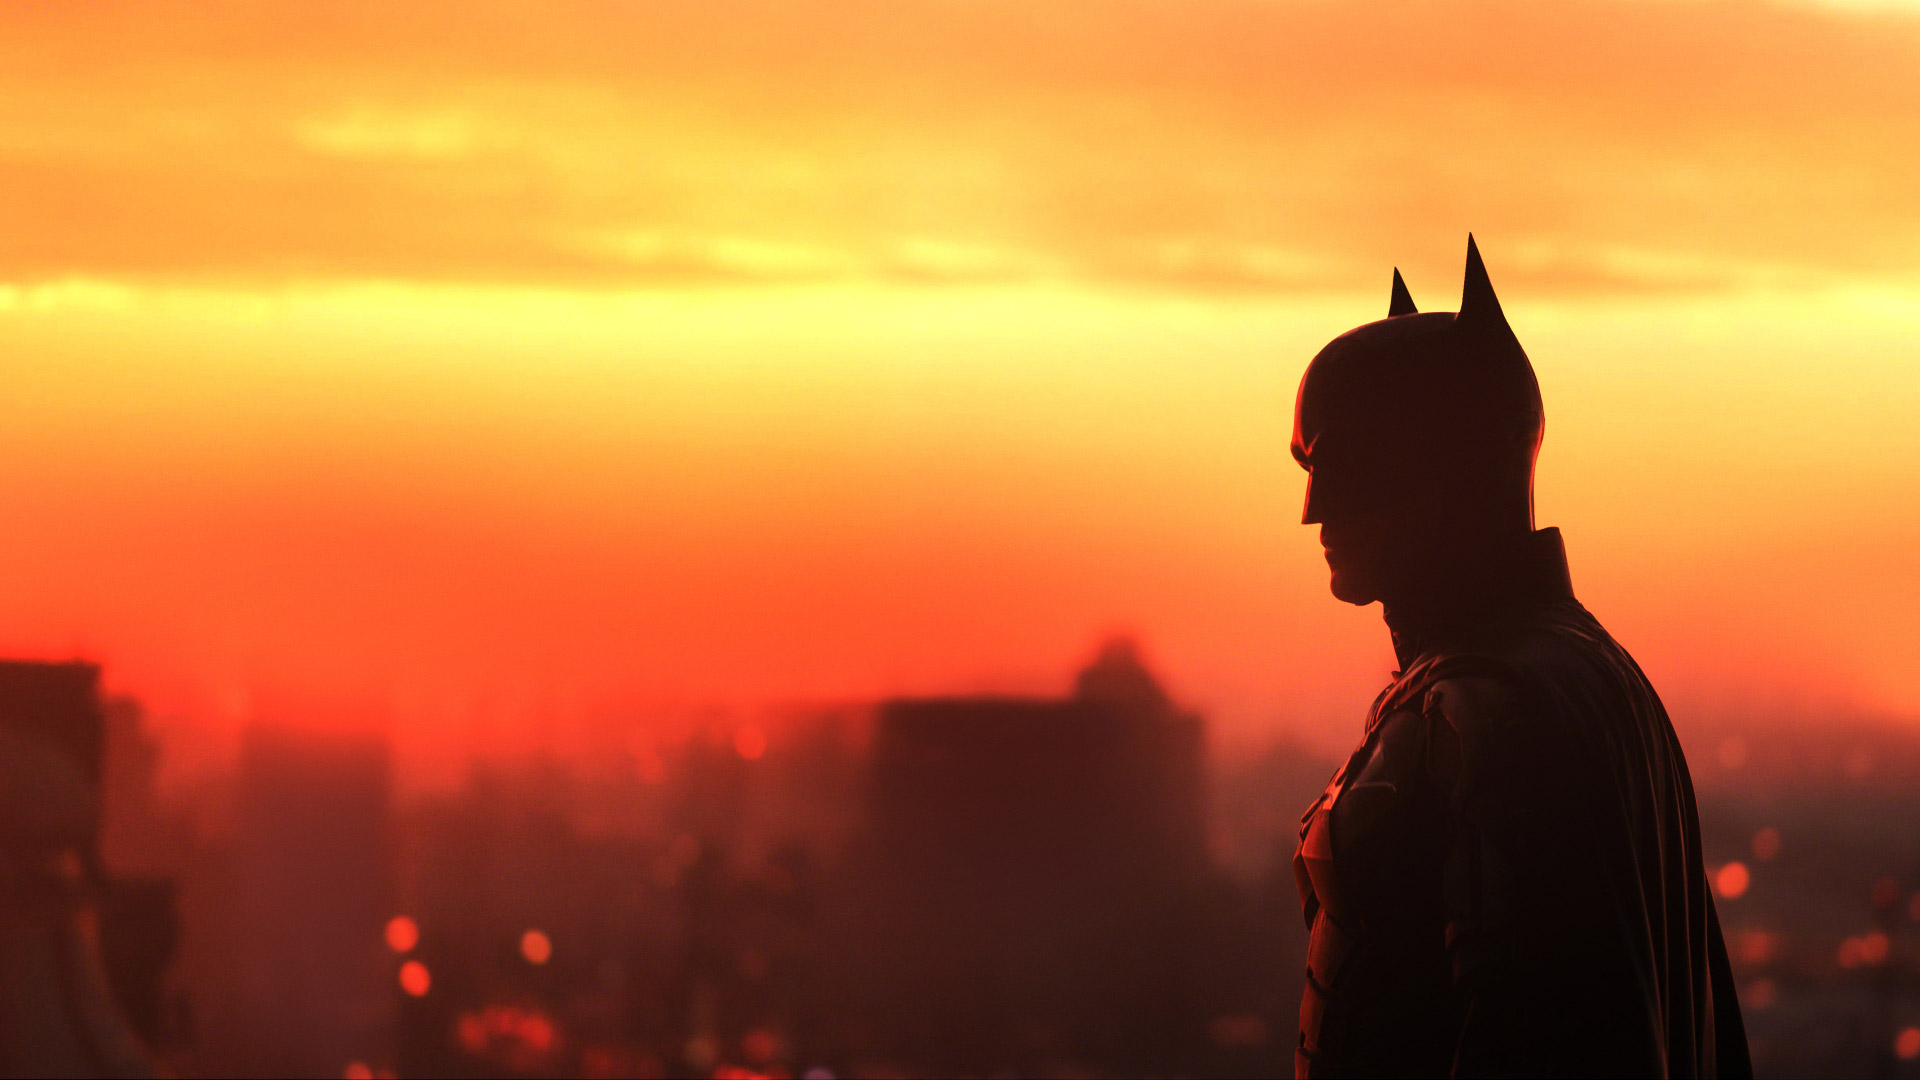 تاریخ شروع پروسه فیلمبرداری فیلم The Batman: Part II اعلام شد